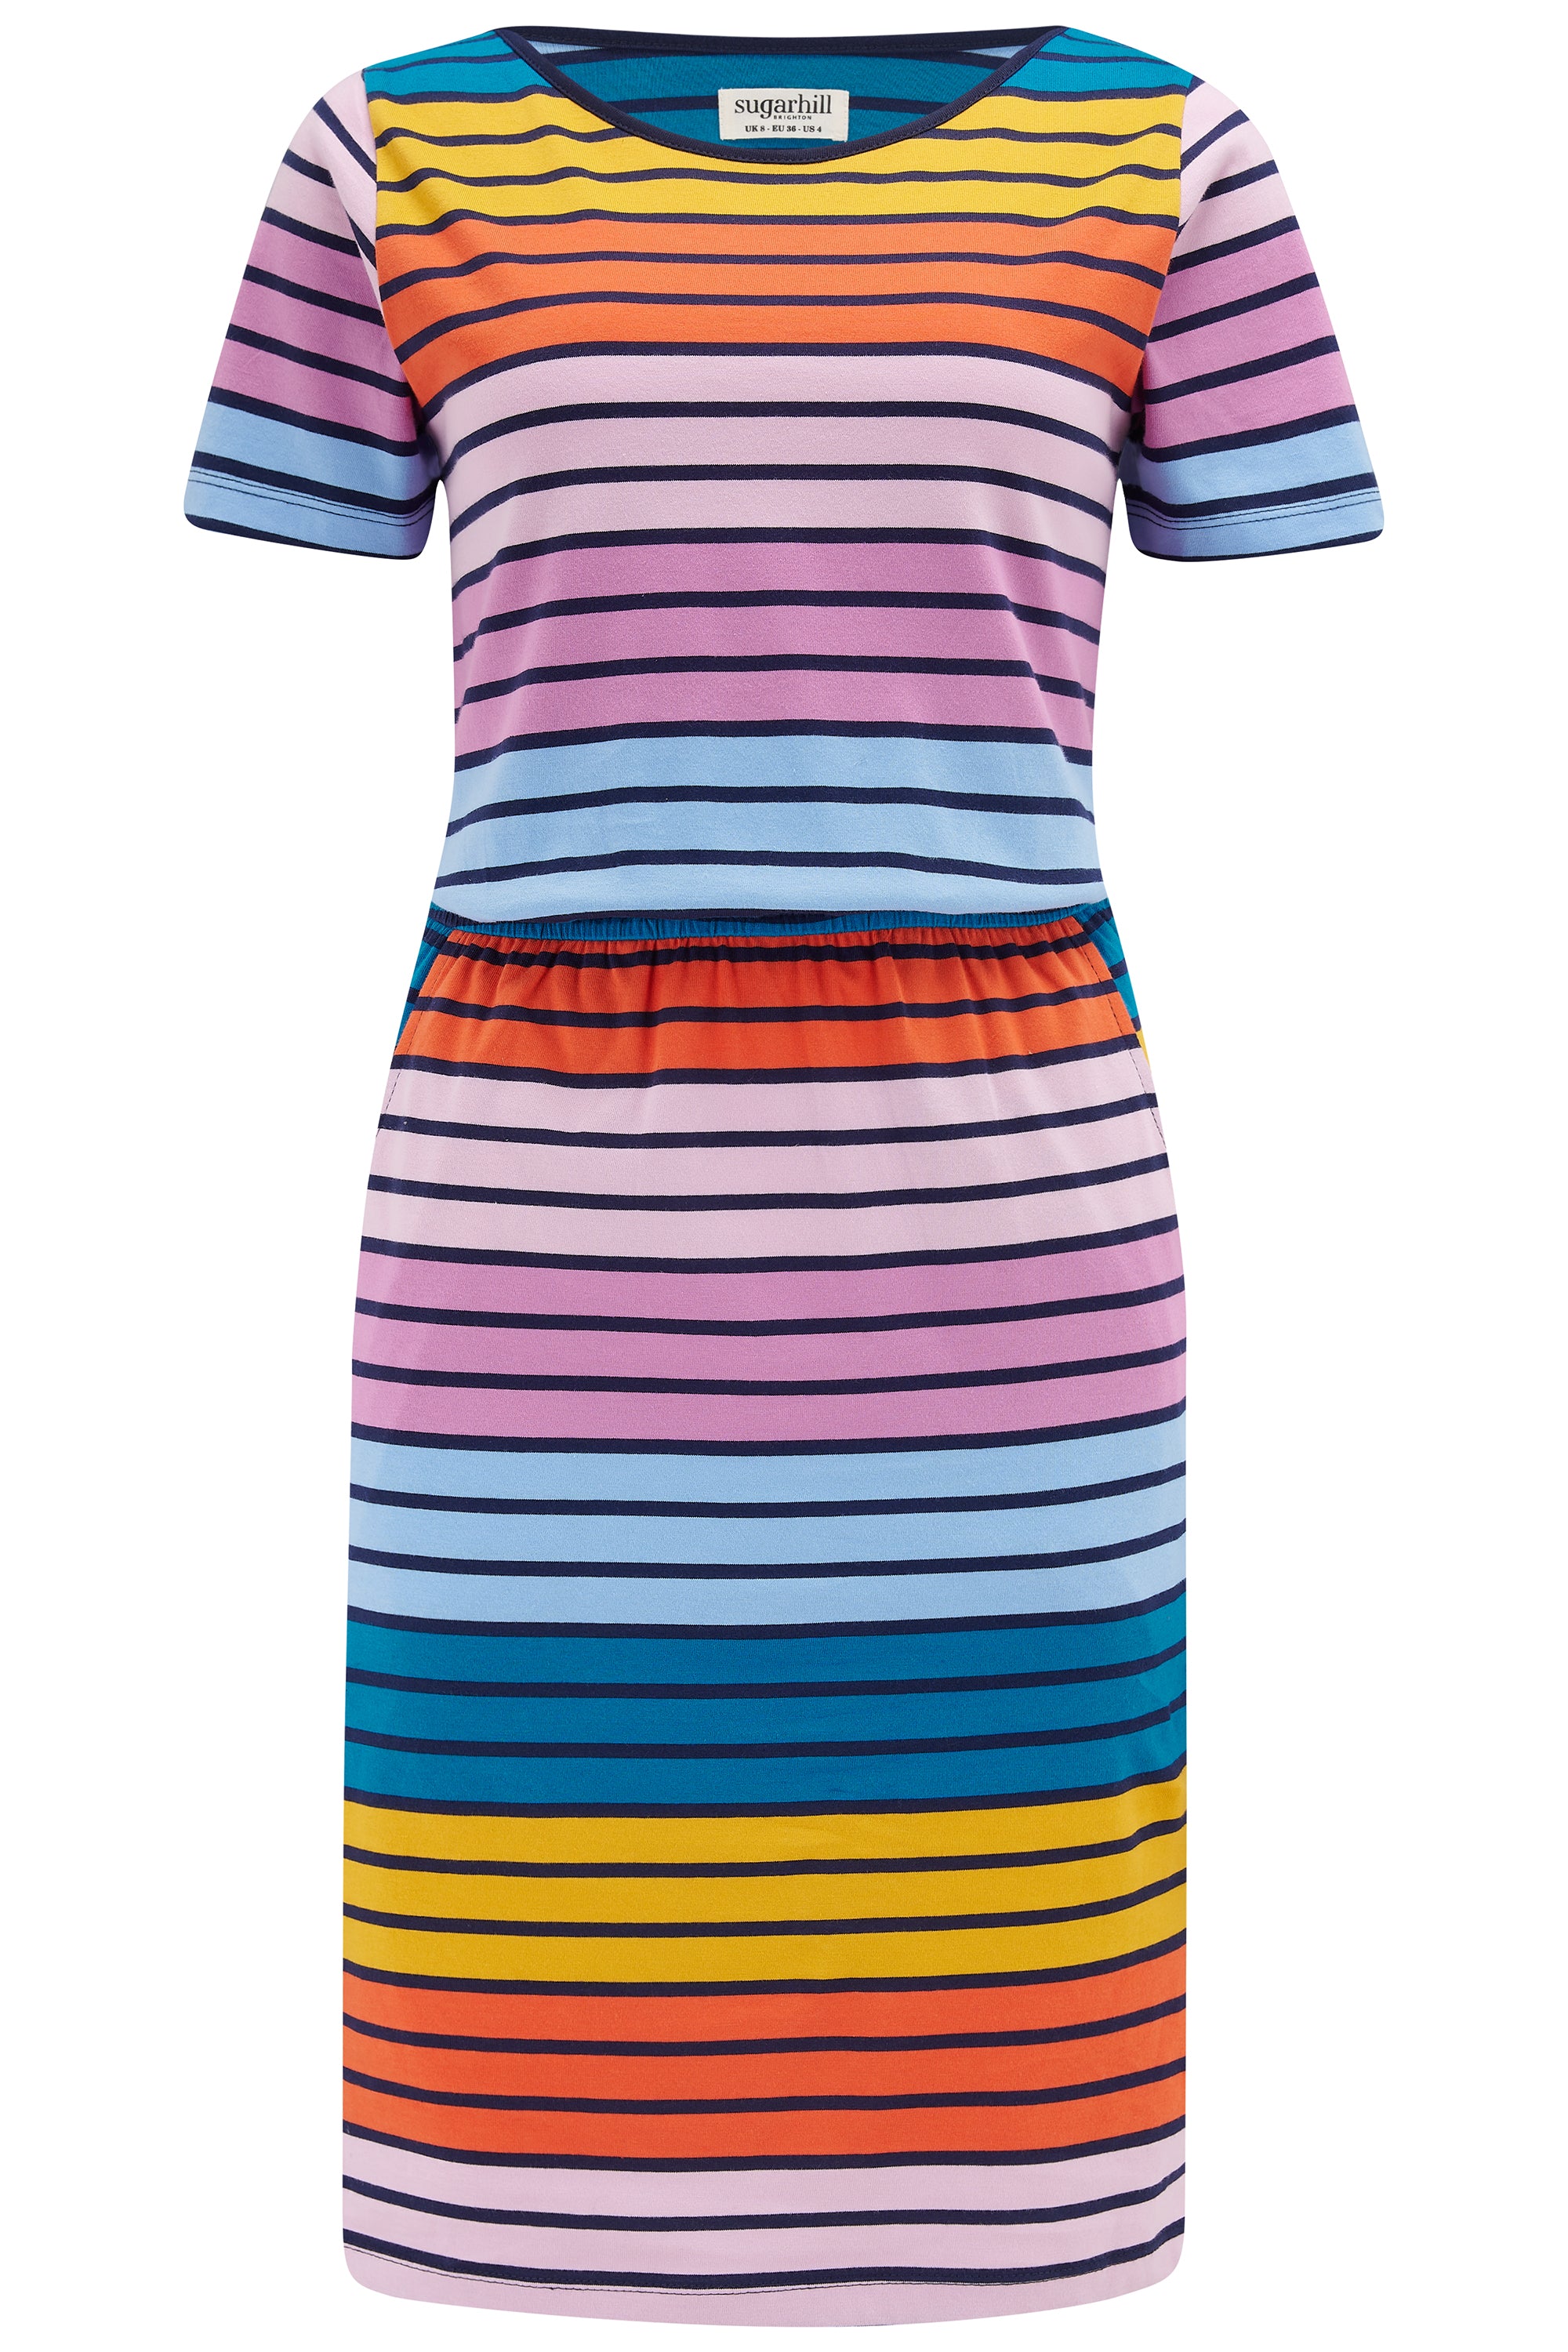 Sugarhill Brighton Women's Terri Jersey Dress Multi, Sundown Stripe